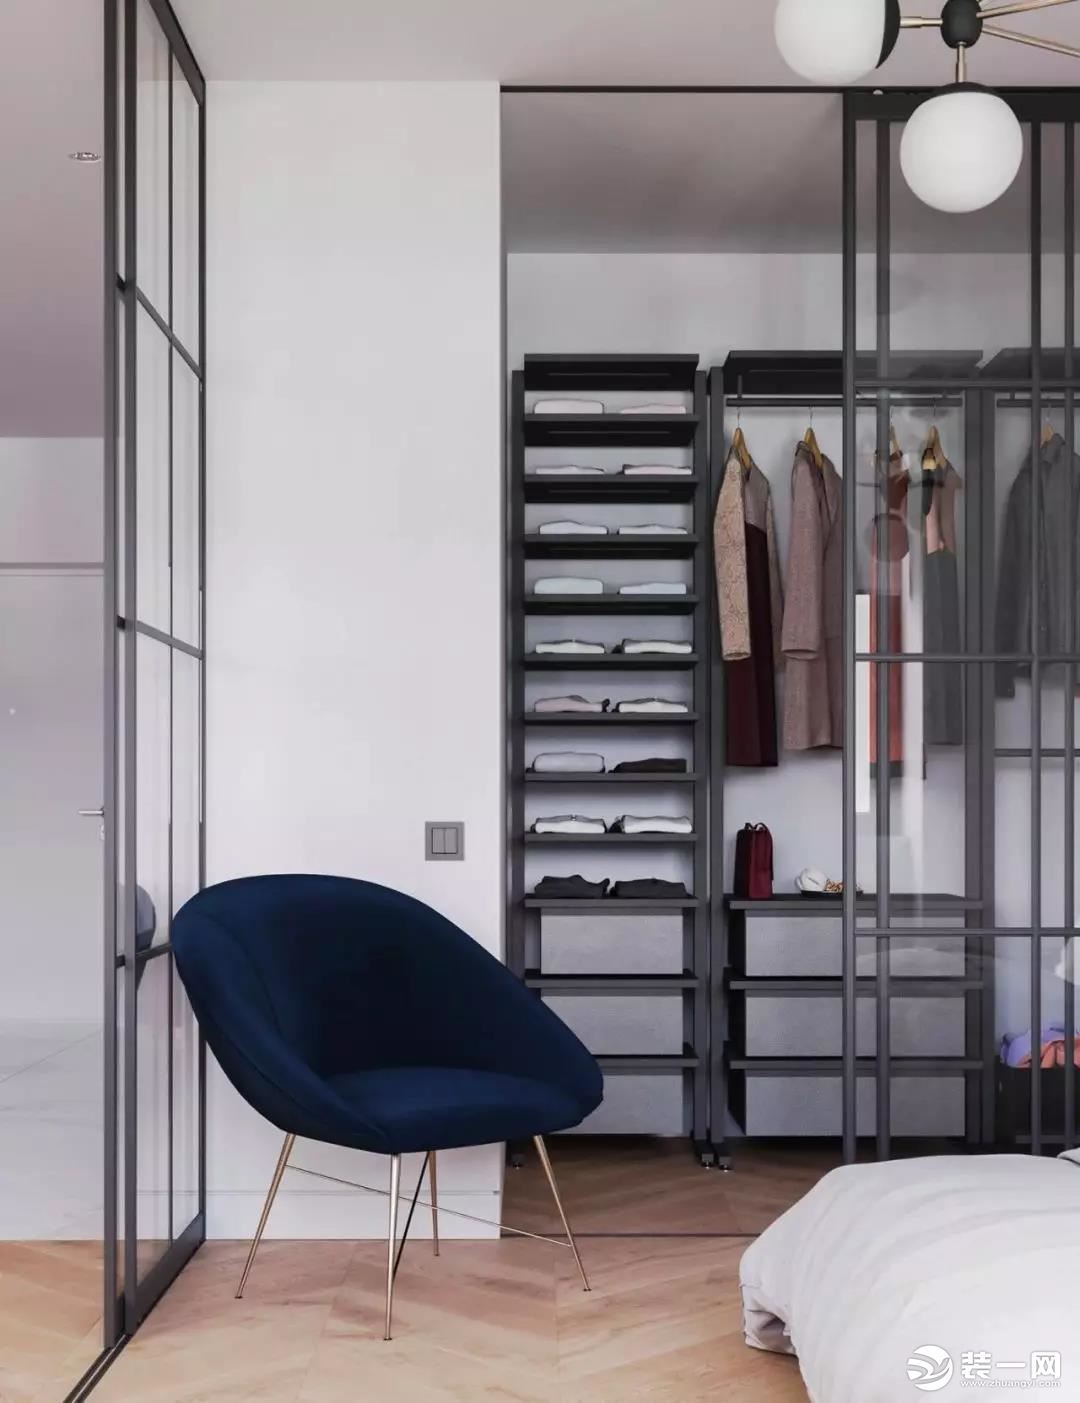 入墻式衣柜設計 嵌入式衣柜設計 臥室衣柜大空間設計